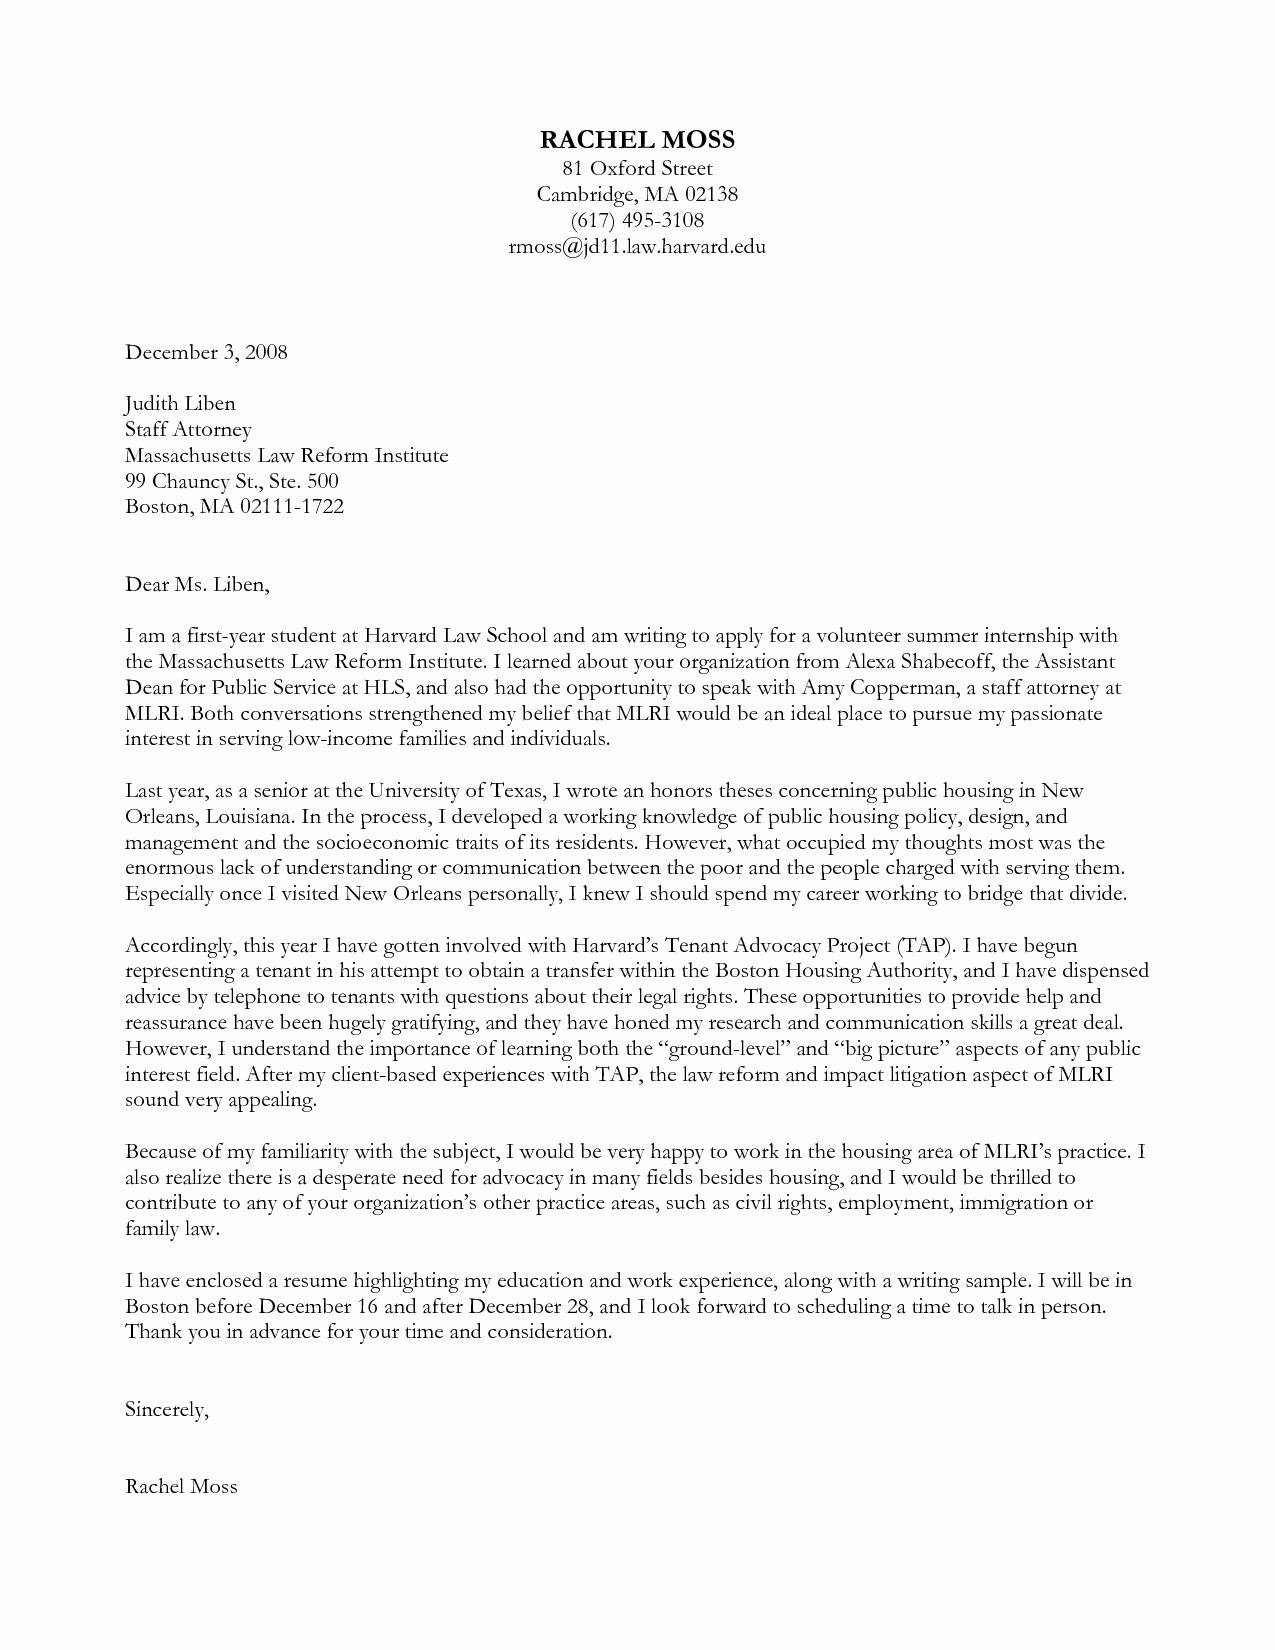 Harvard Letter Of Recommendation Fresh Harvard Cover Letter